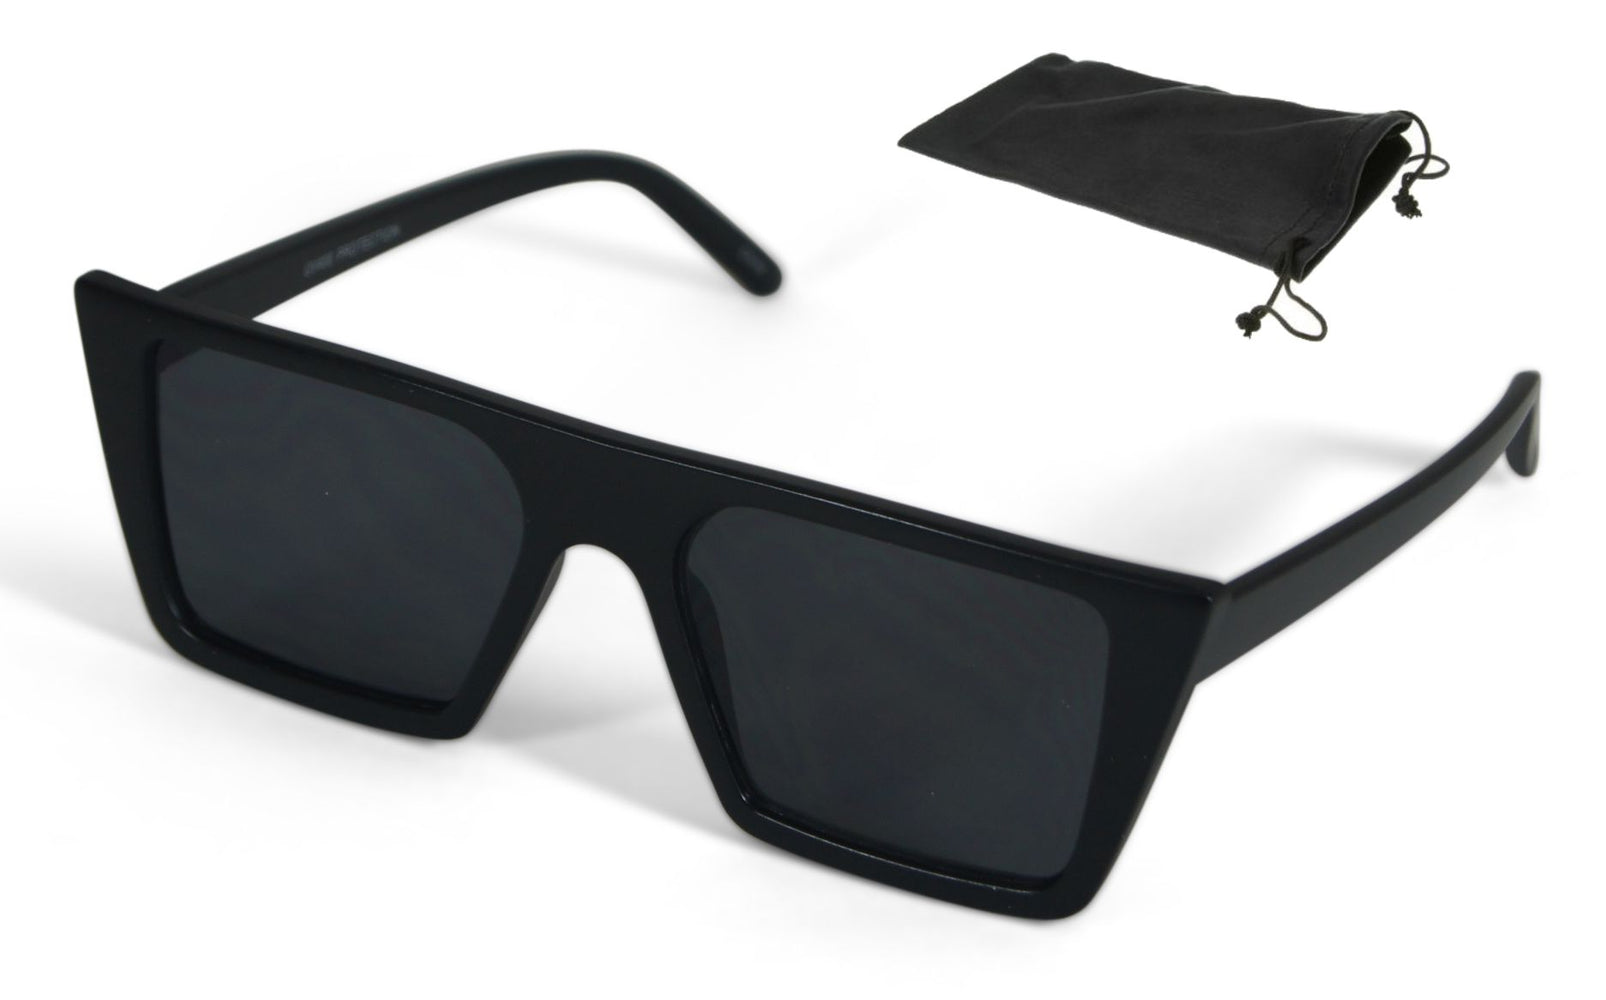 Walter Flat Top Sunglasses Retro Designer Square Gradient Lens